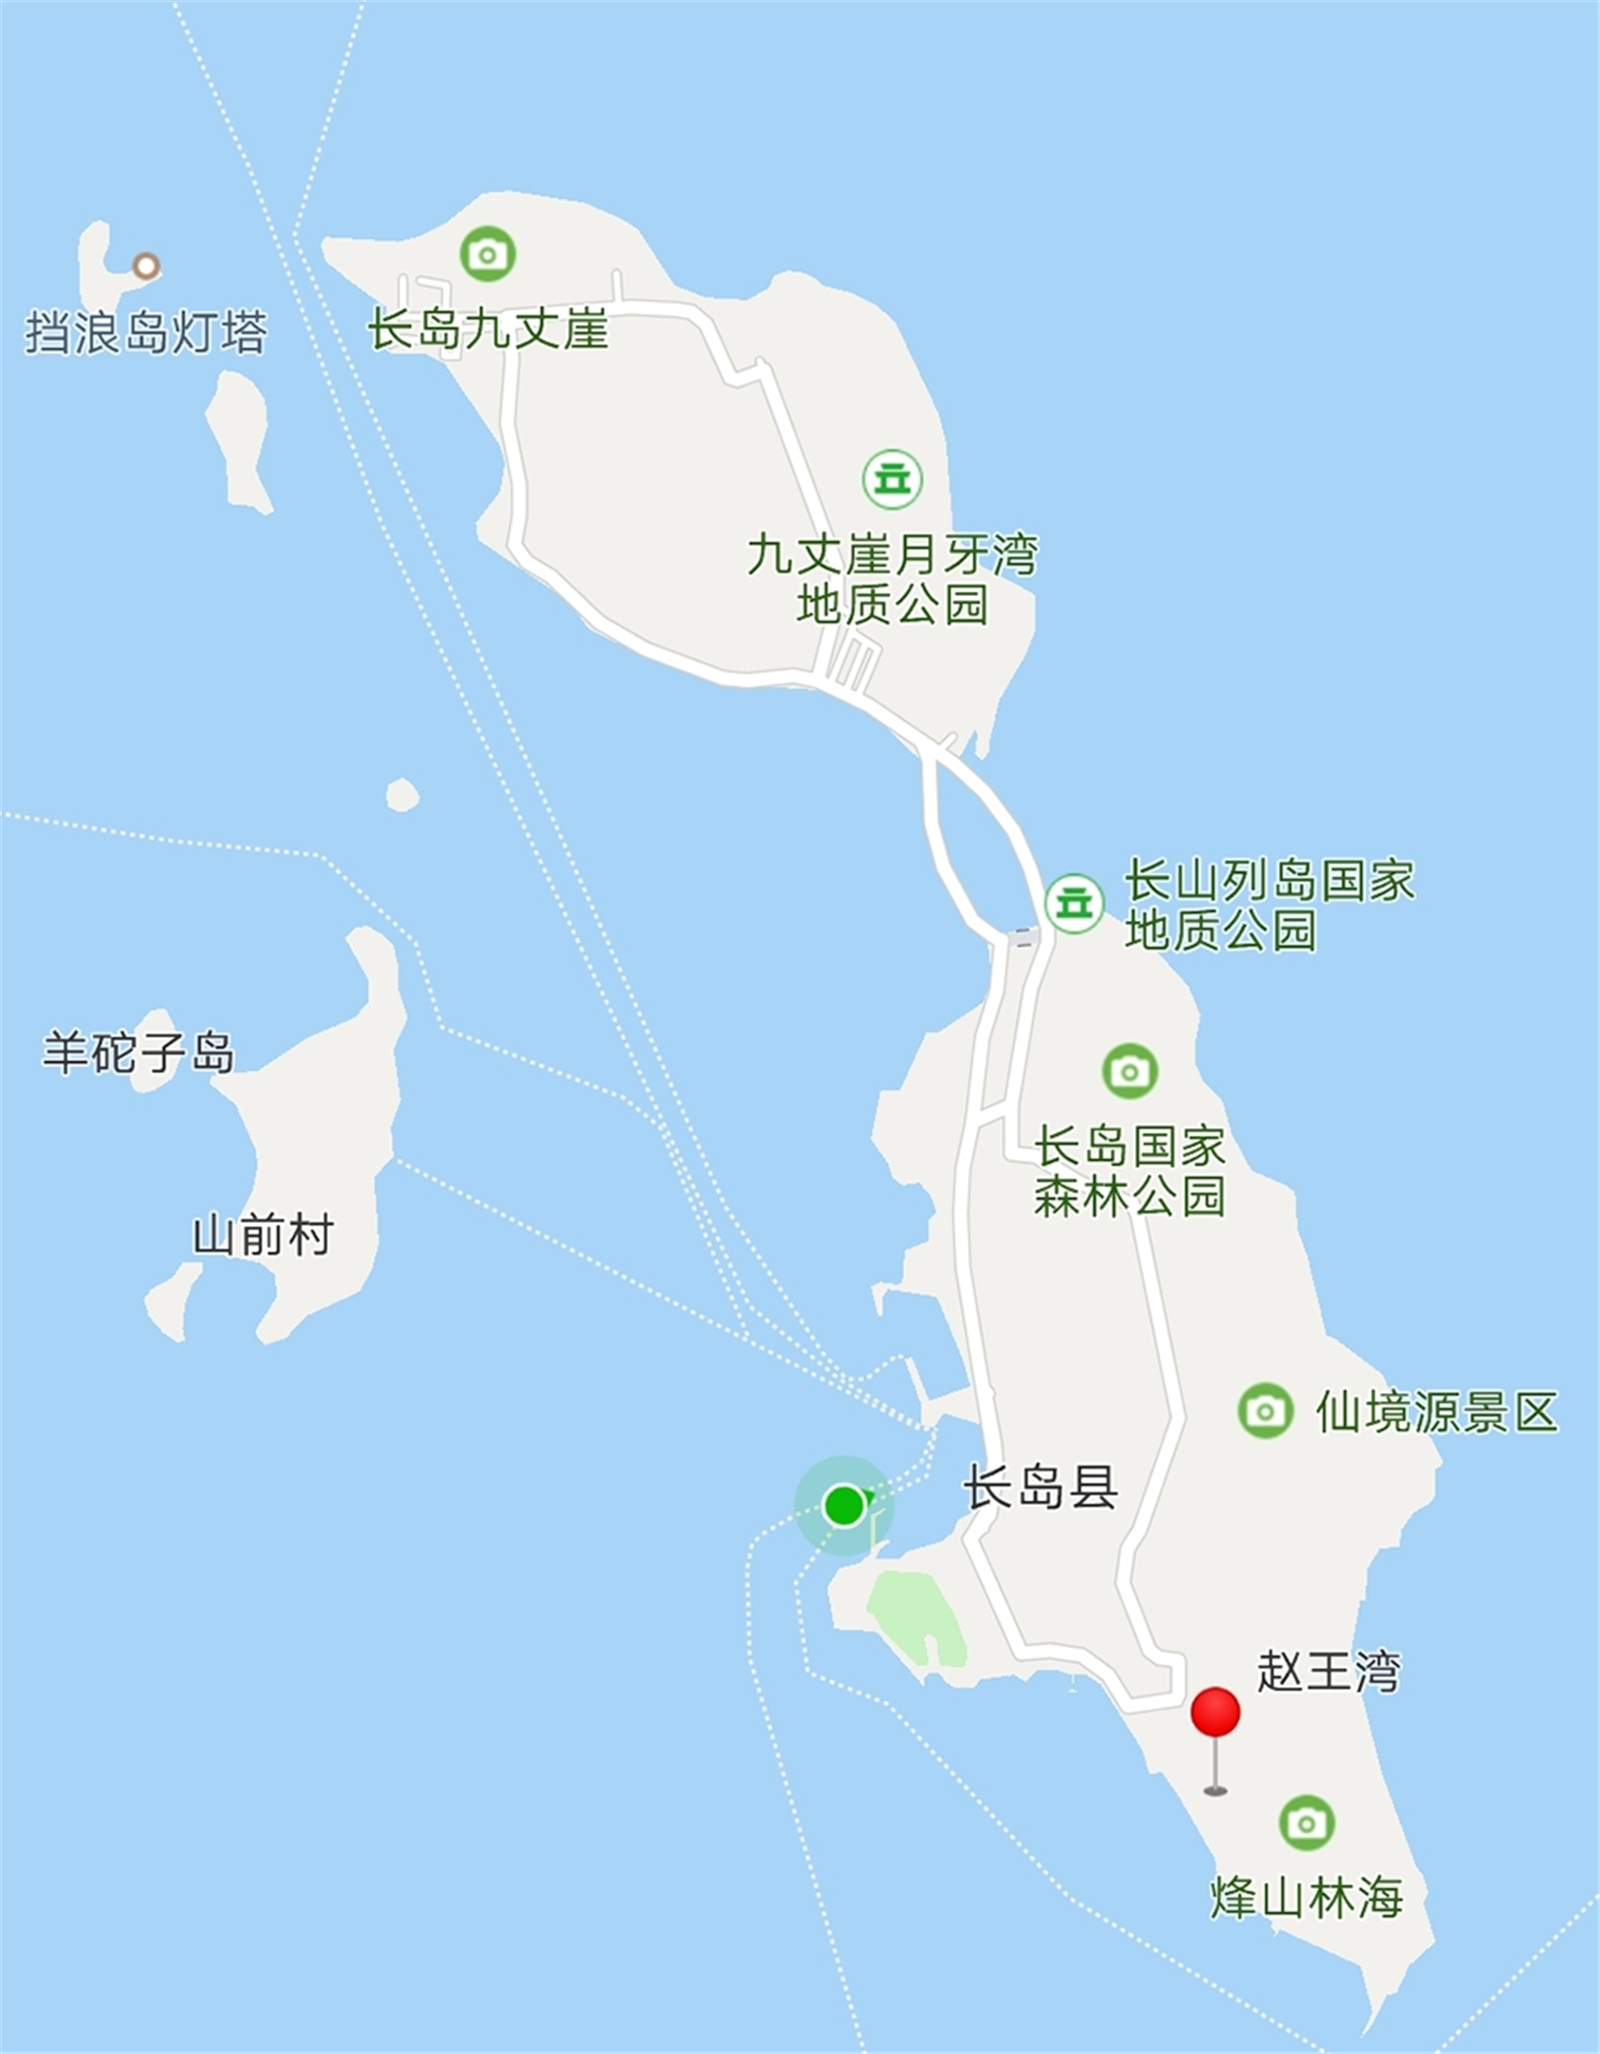 海洋文明生态示范区和国家海洋公园,中国十大最美海岛,十大旅游强县